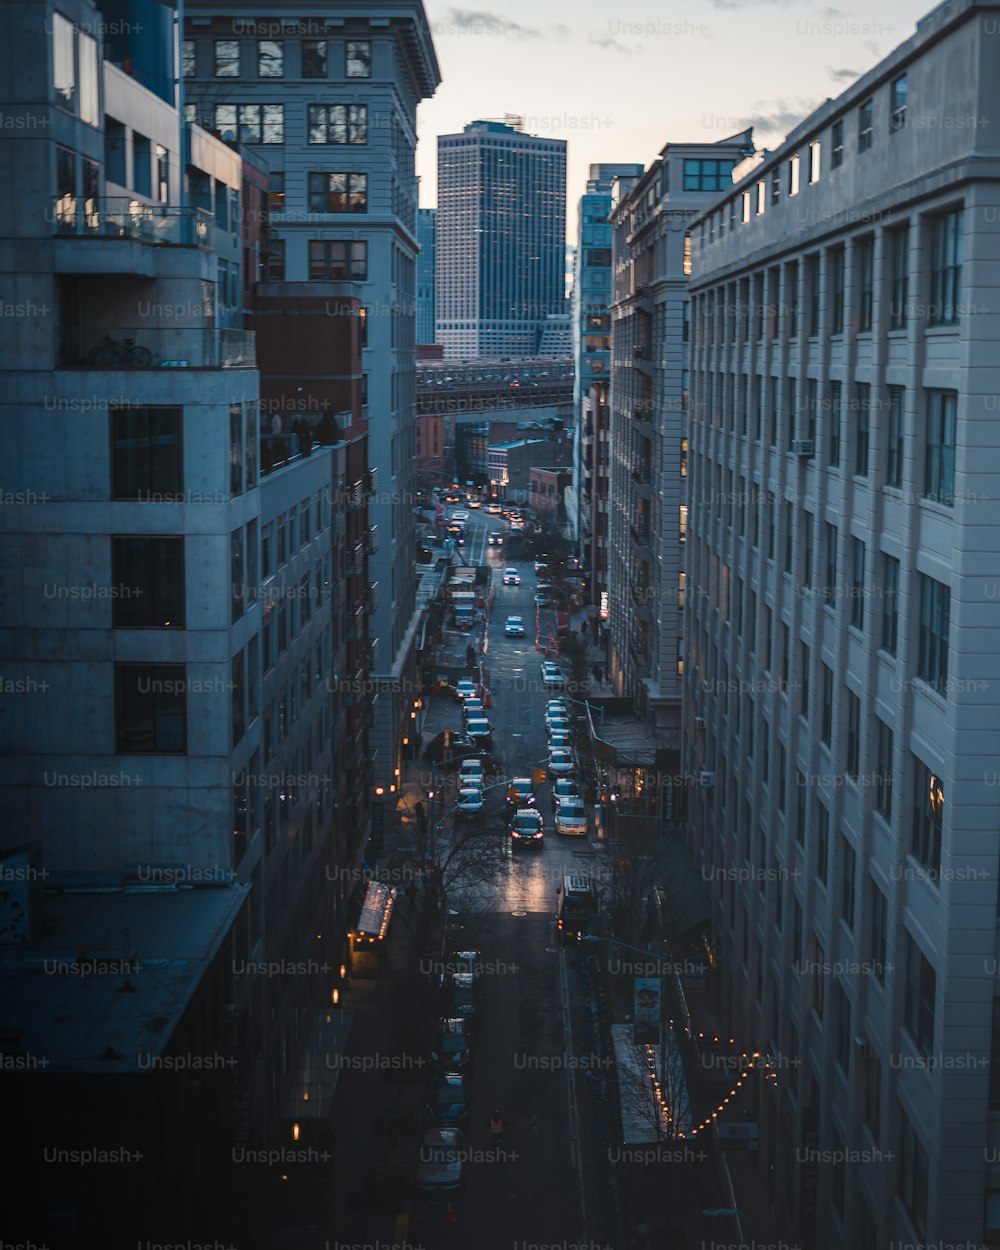 Una calle de la ciudad llena de mucho tráfico junto a edificios altos